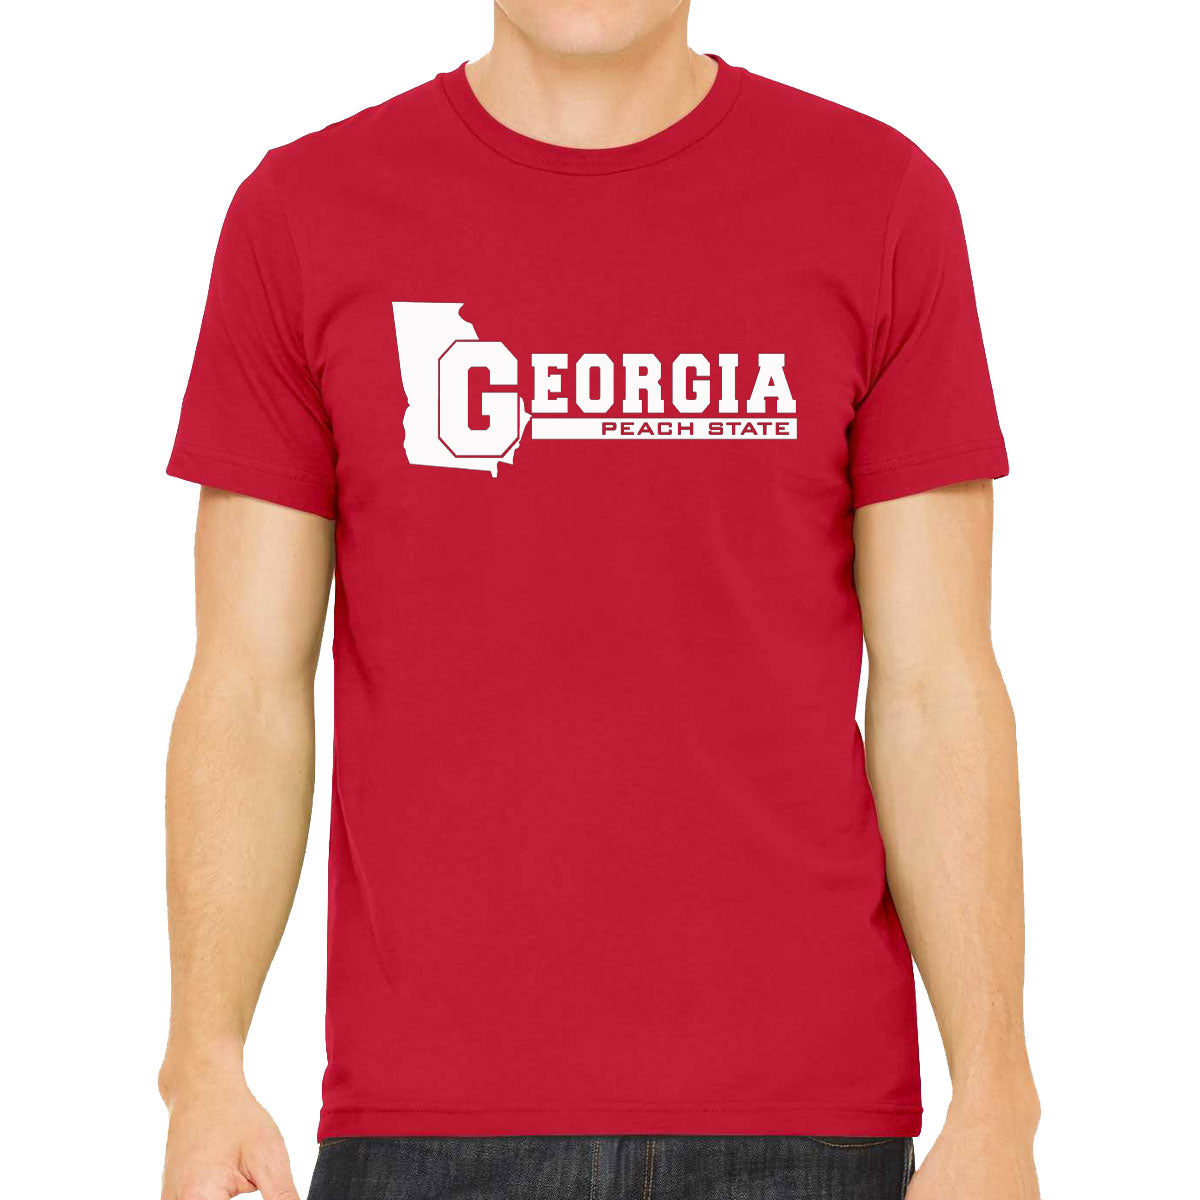 Georgia Peach State Men's T-shirt